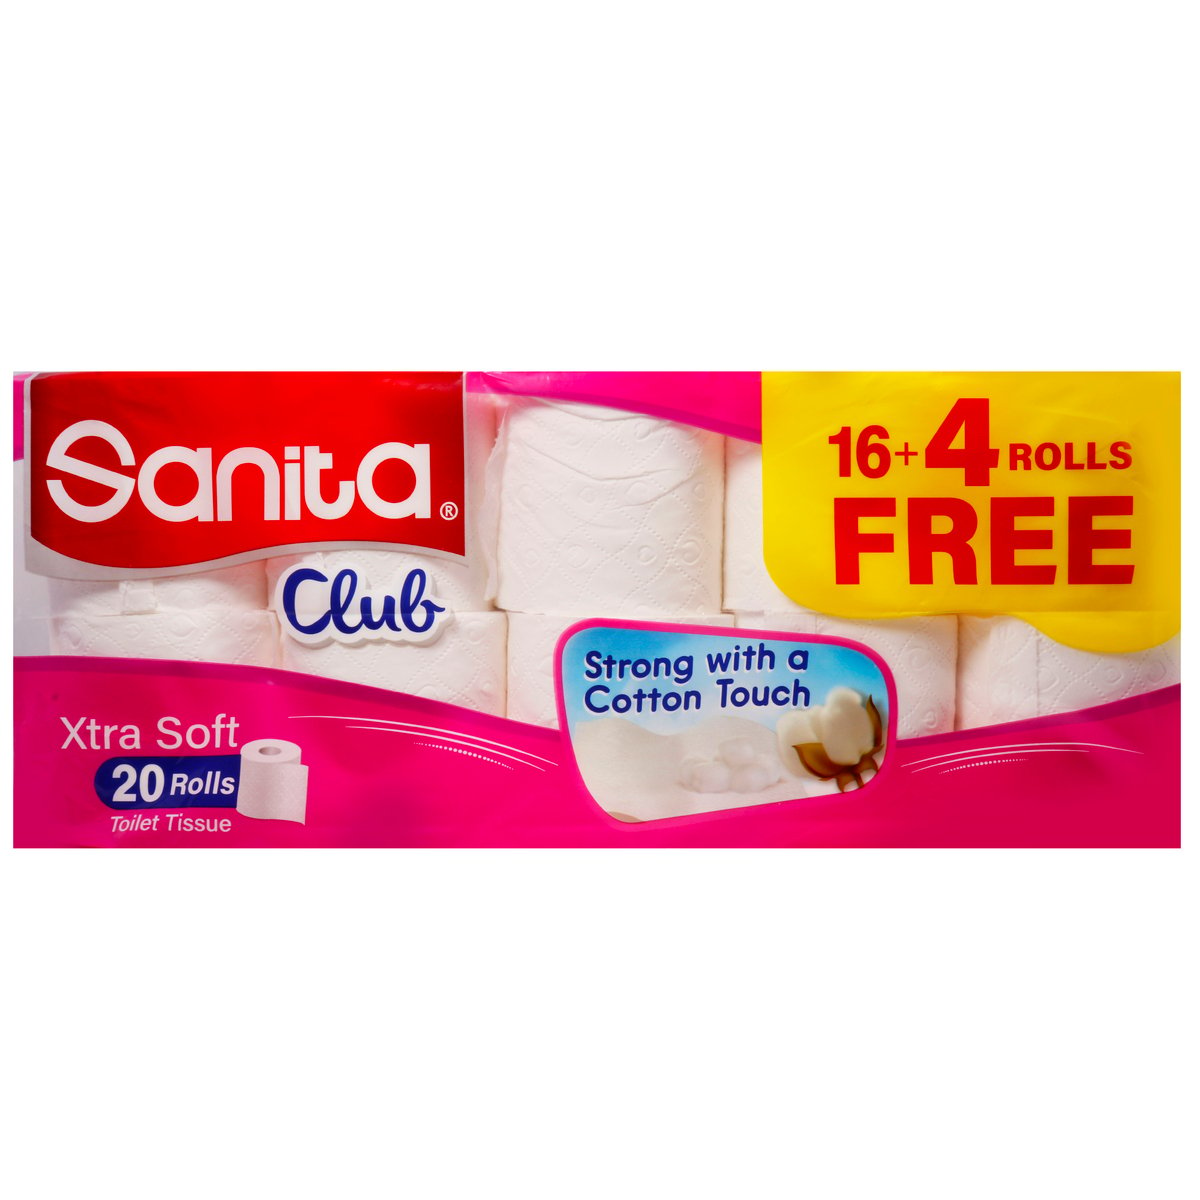 Sanita Club Toilet Roll 16 + 4